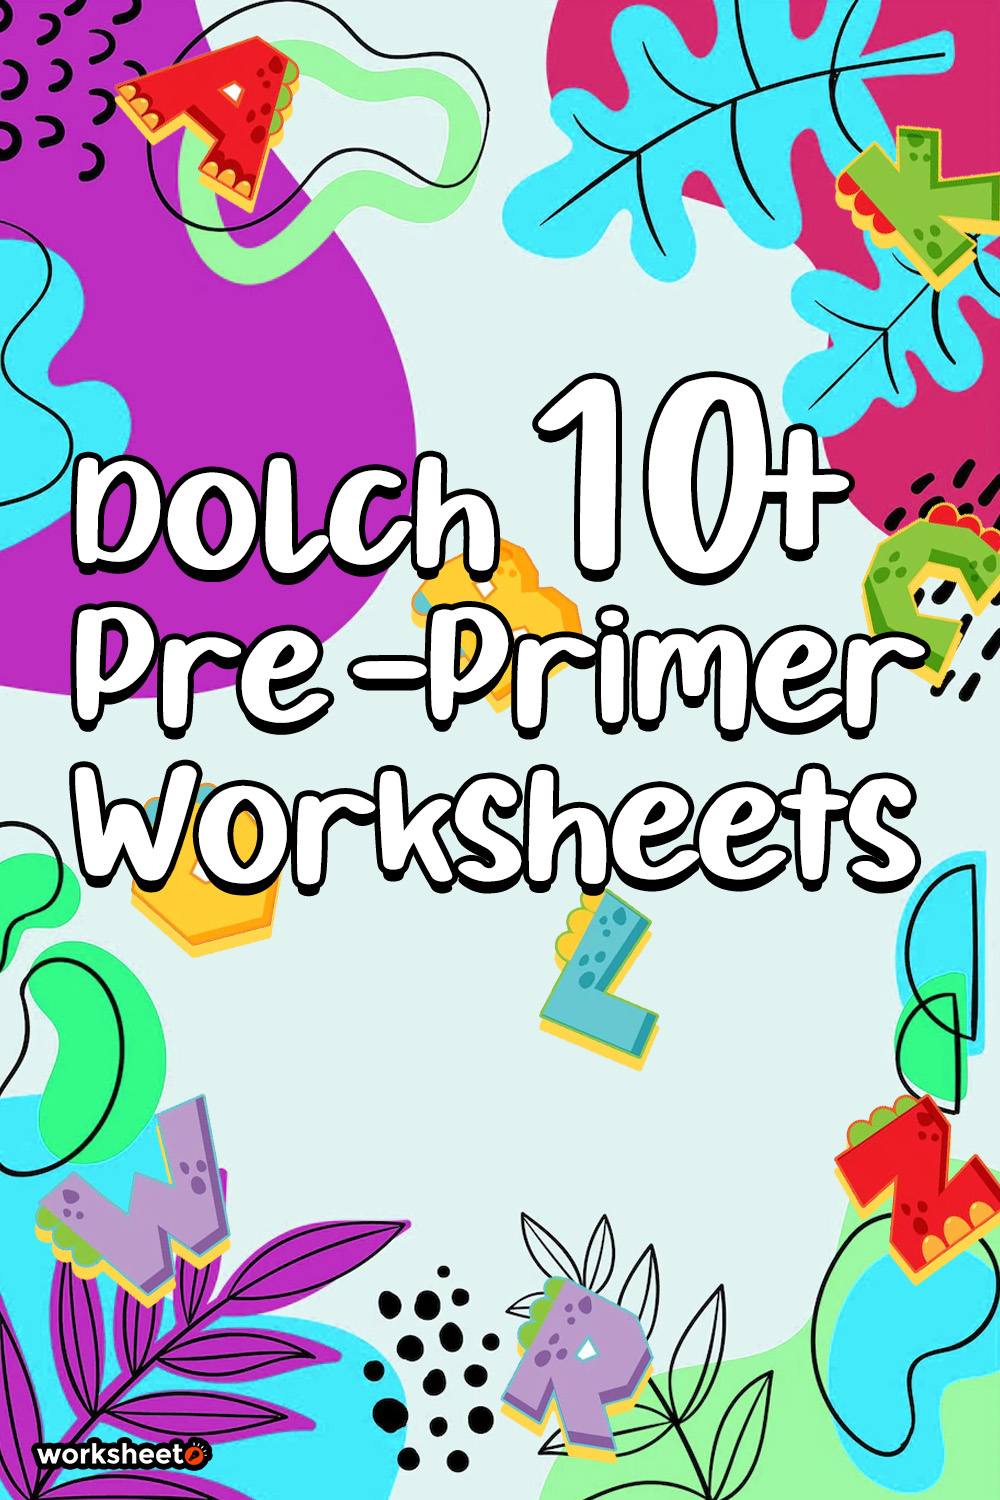 13 Images of Dolch Pre -Primer Worksheets